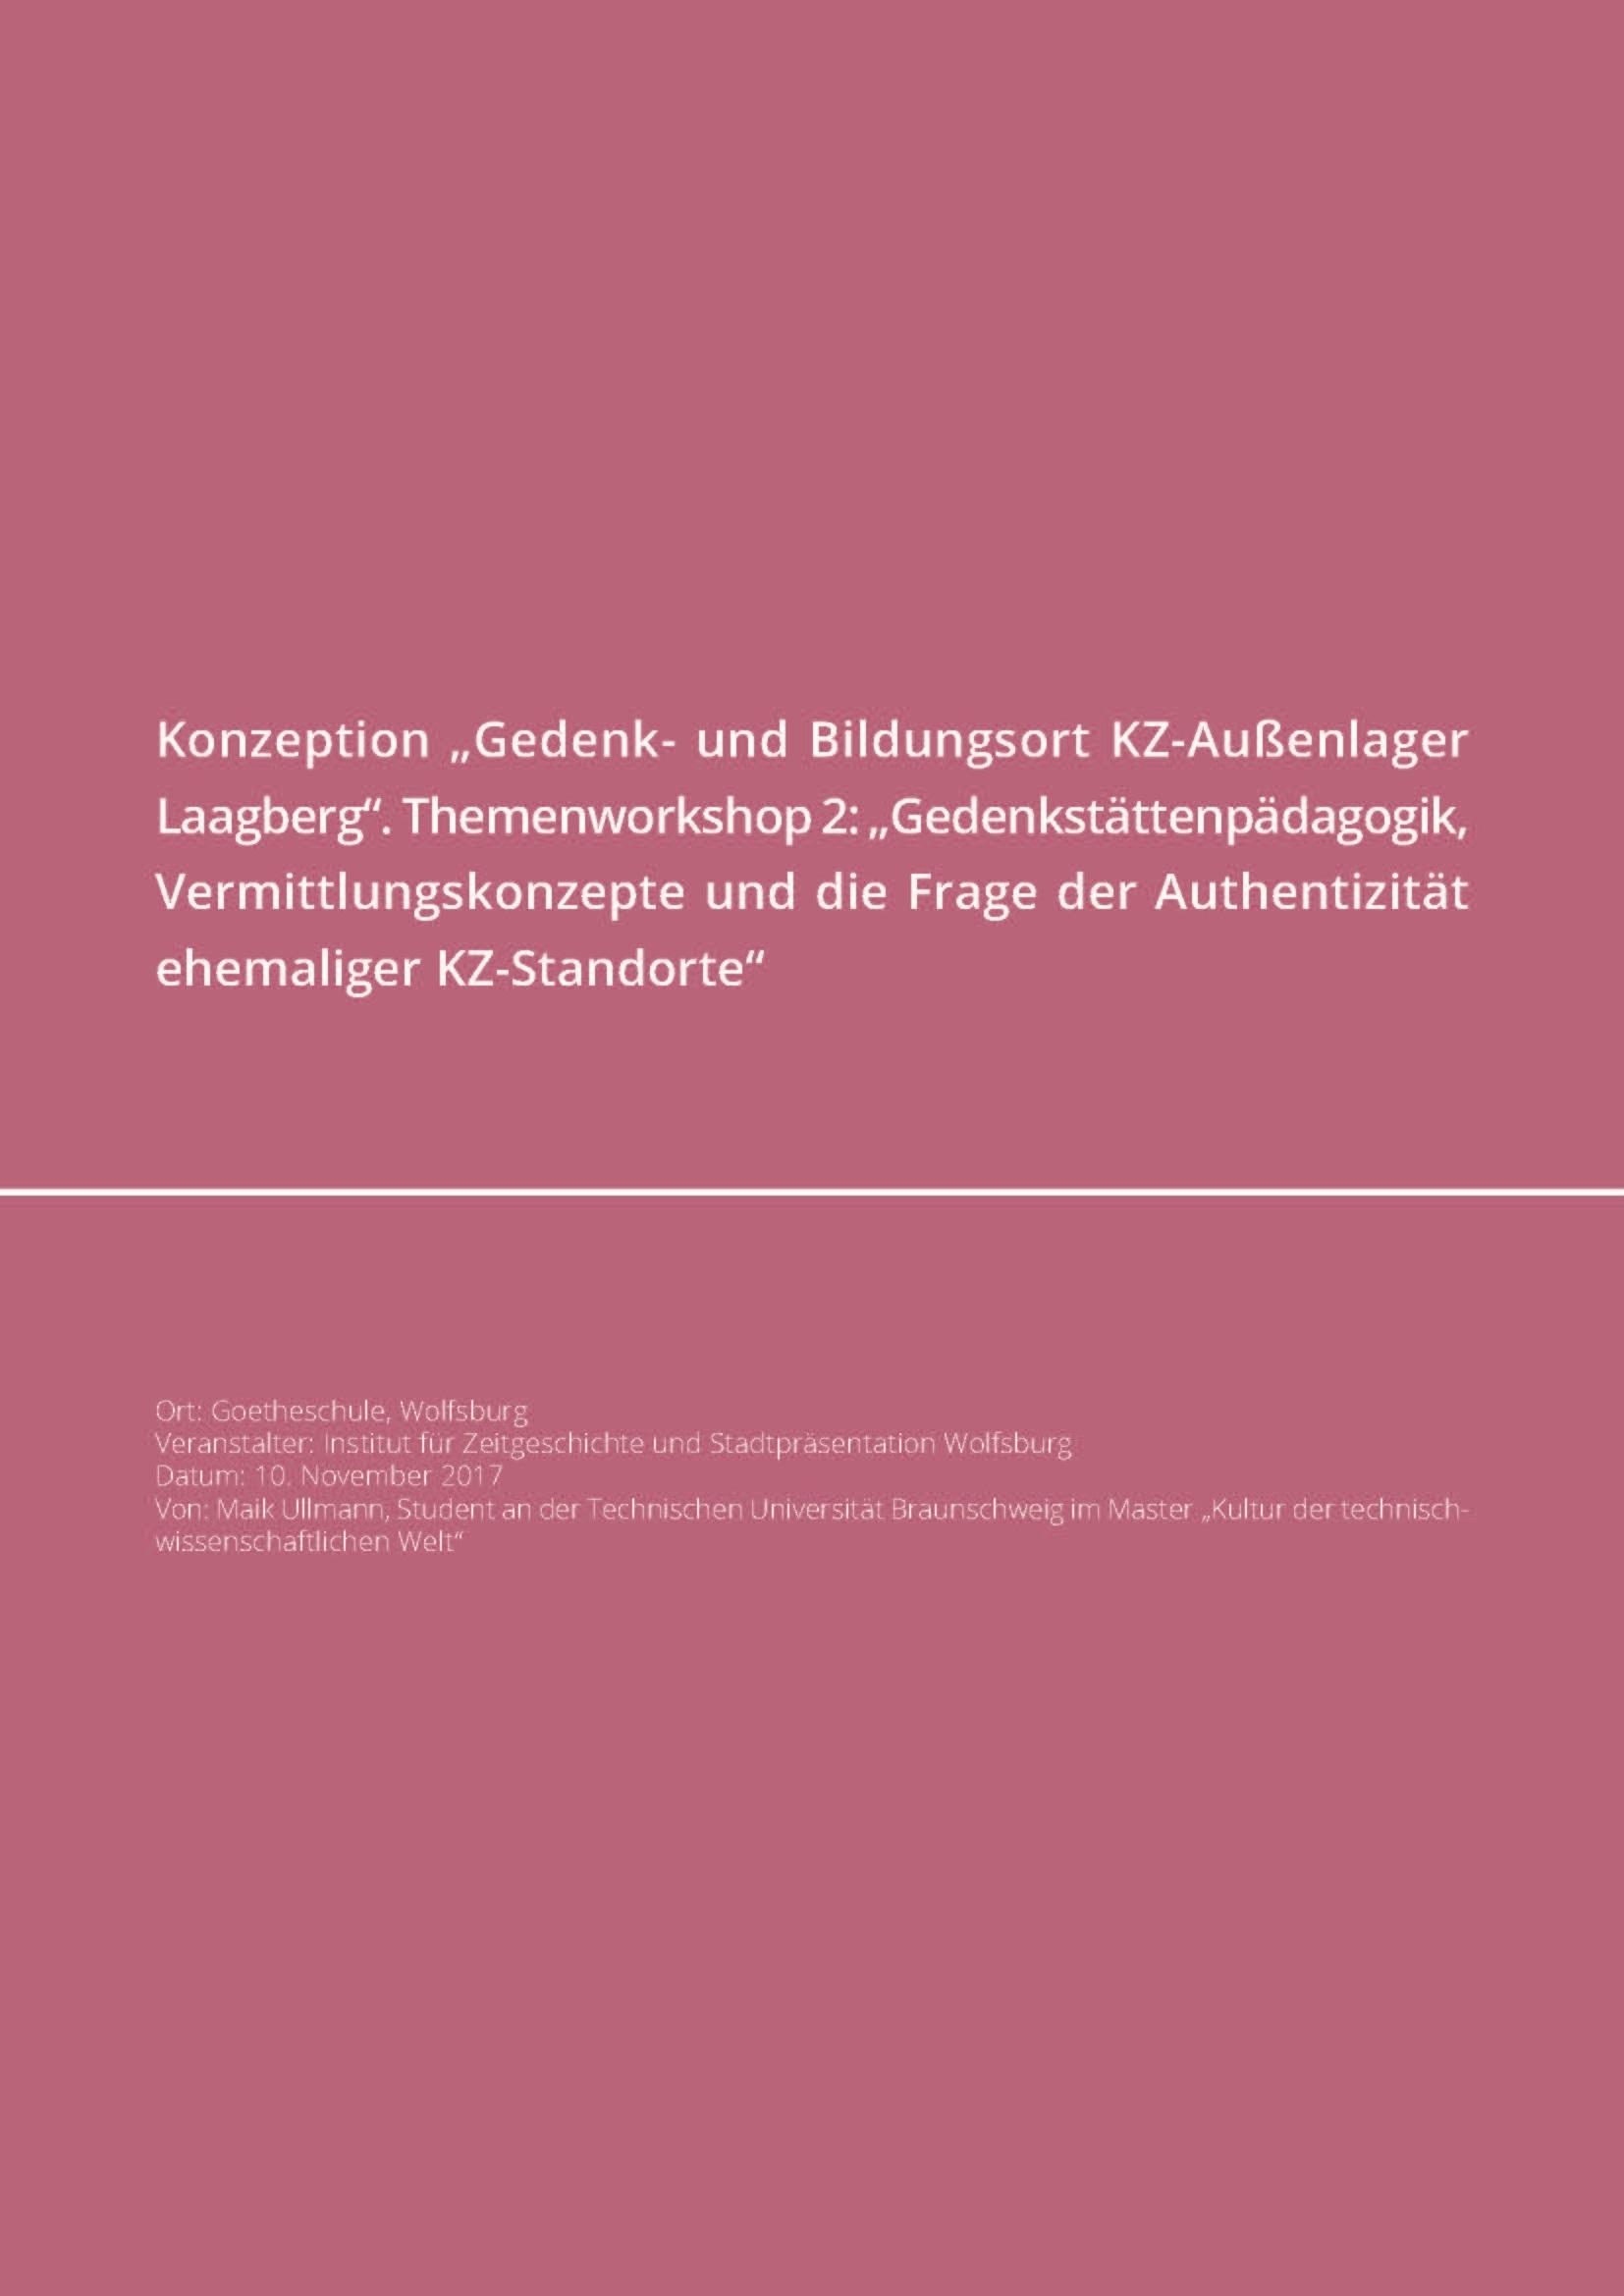 Titelseite der Konzeption „Gedenk- und Bildungsort KZ-Außenlager Laagberg“.